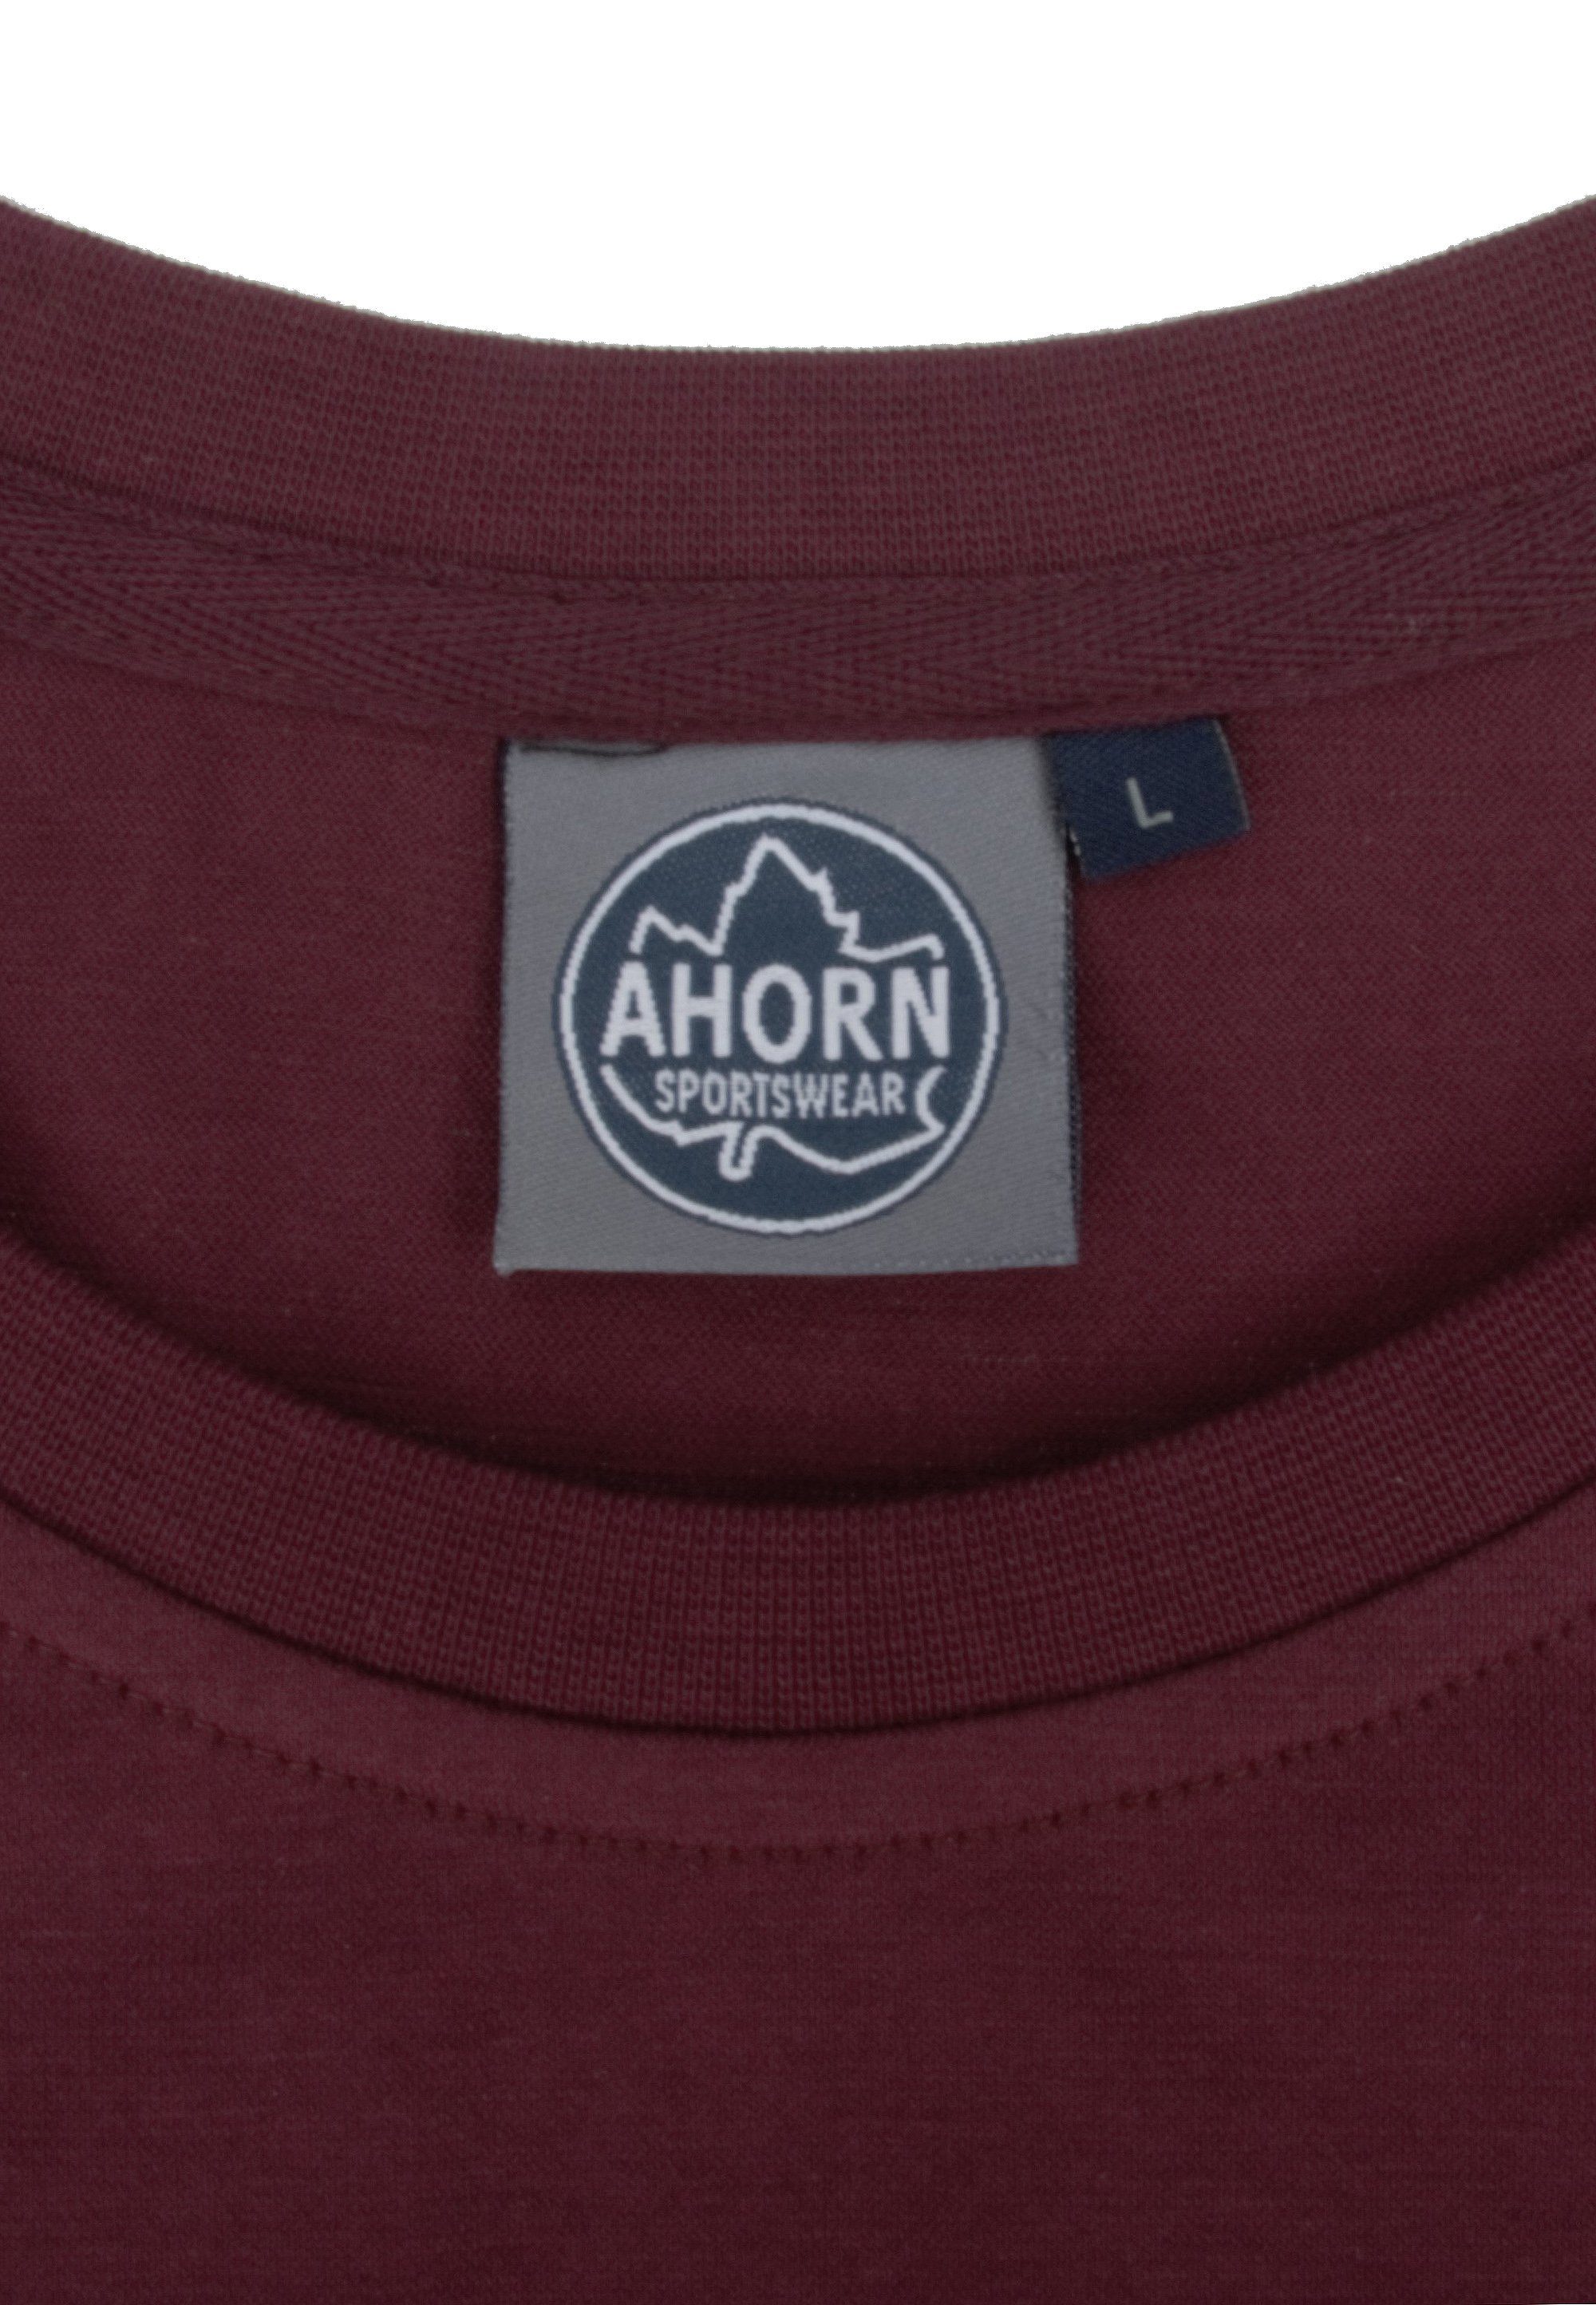 AHORN SPORTSWEAR T-Shirt klassischen Basic-Look im rot